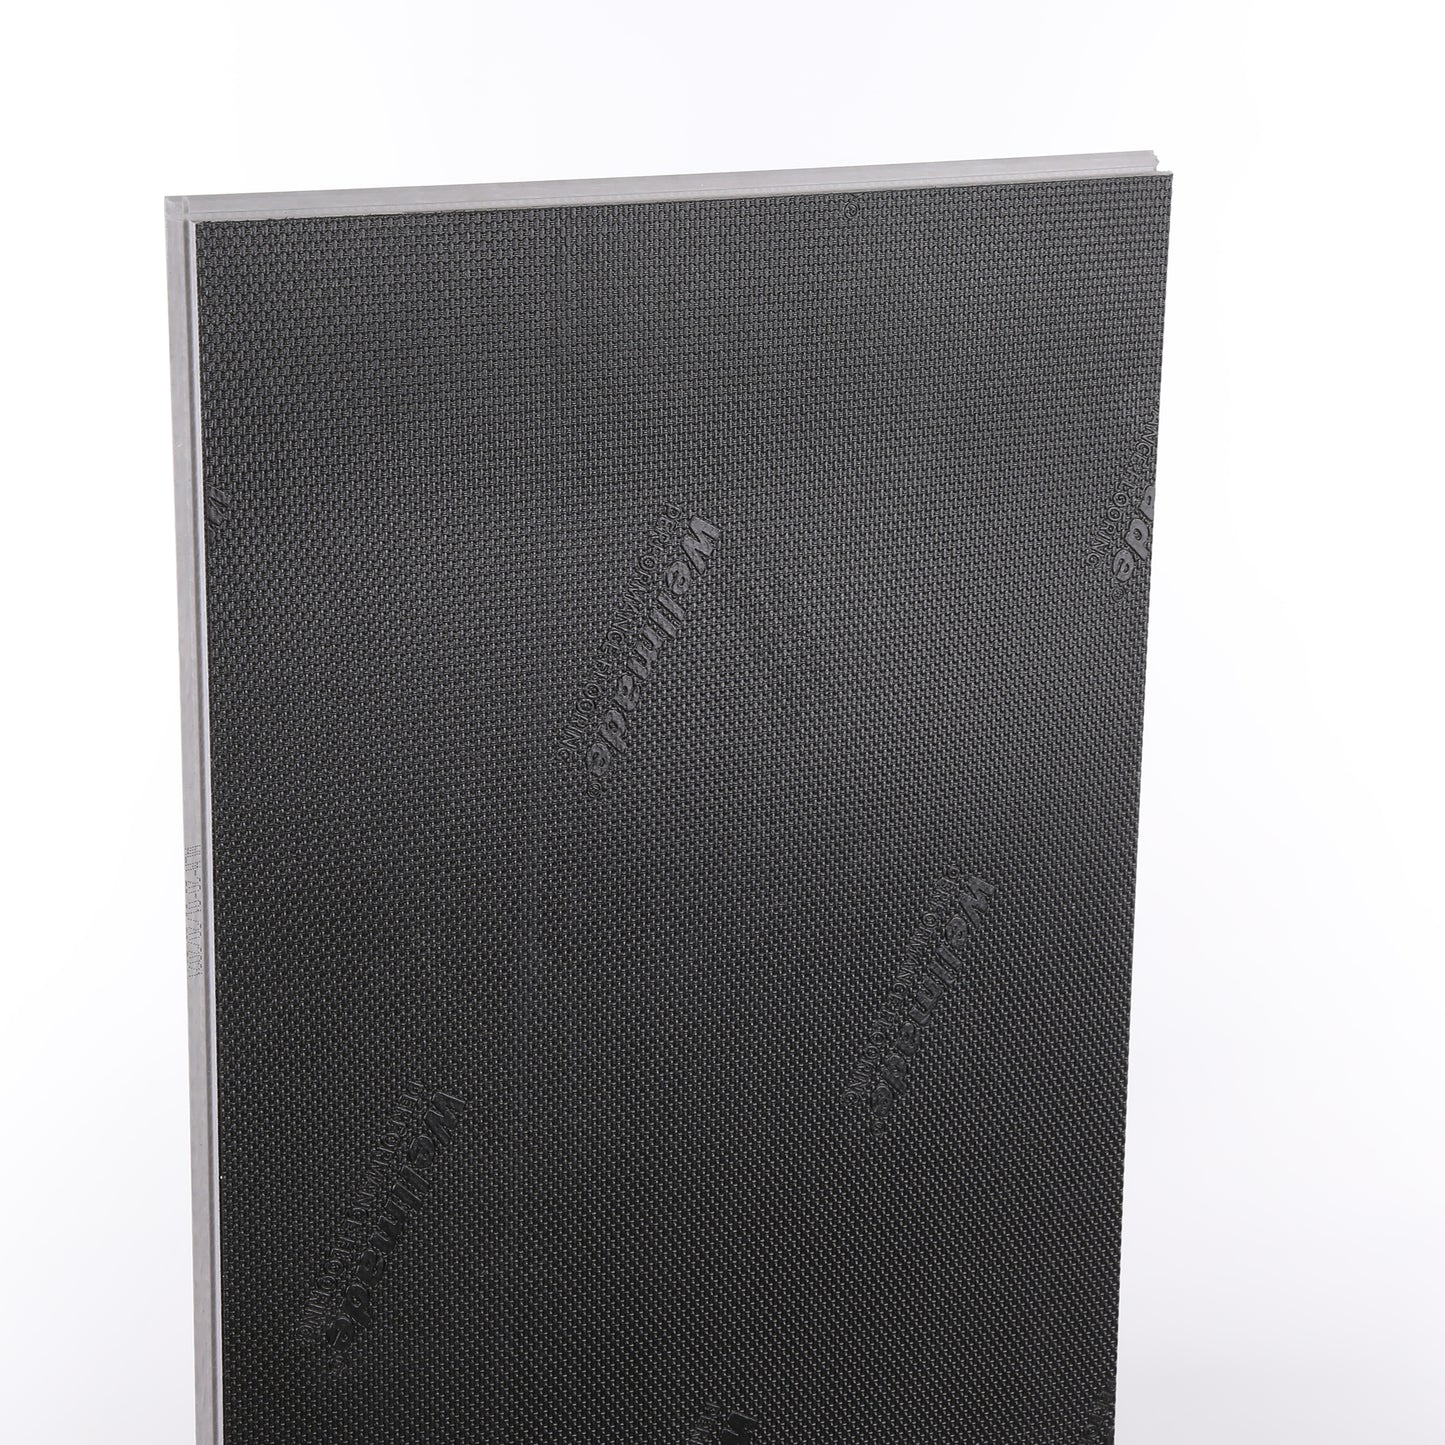 6mm Southbank Sandstone HDPC® Waterproof Luxury Vinyl Tile Flooring 12 in. Wide x 24 in. Long